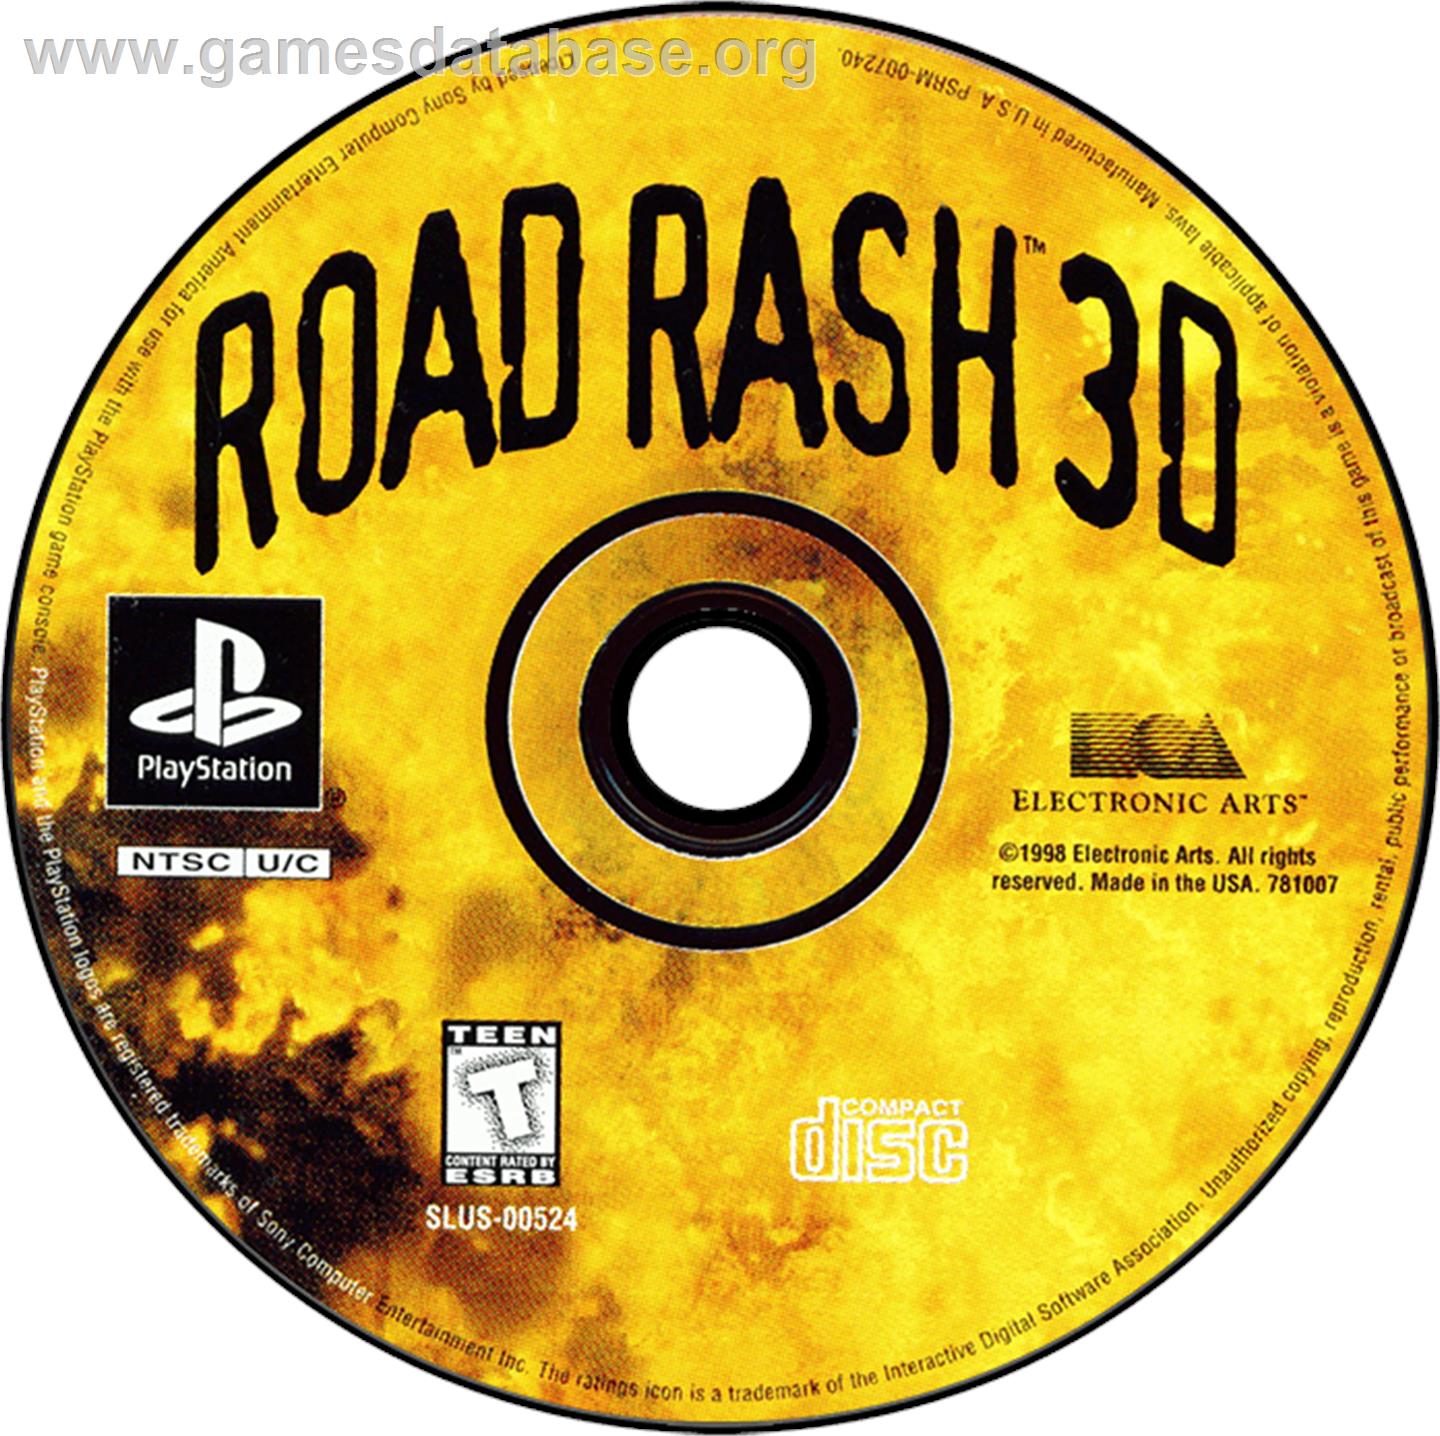 Road Rash 3-D - Sony Playstation - Artwork - Disc